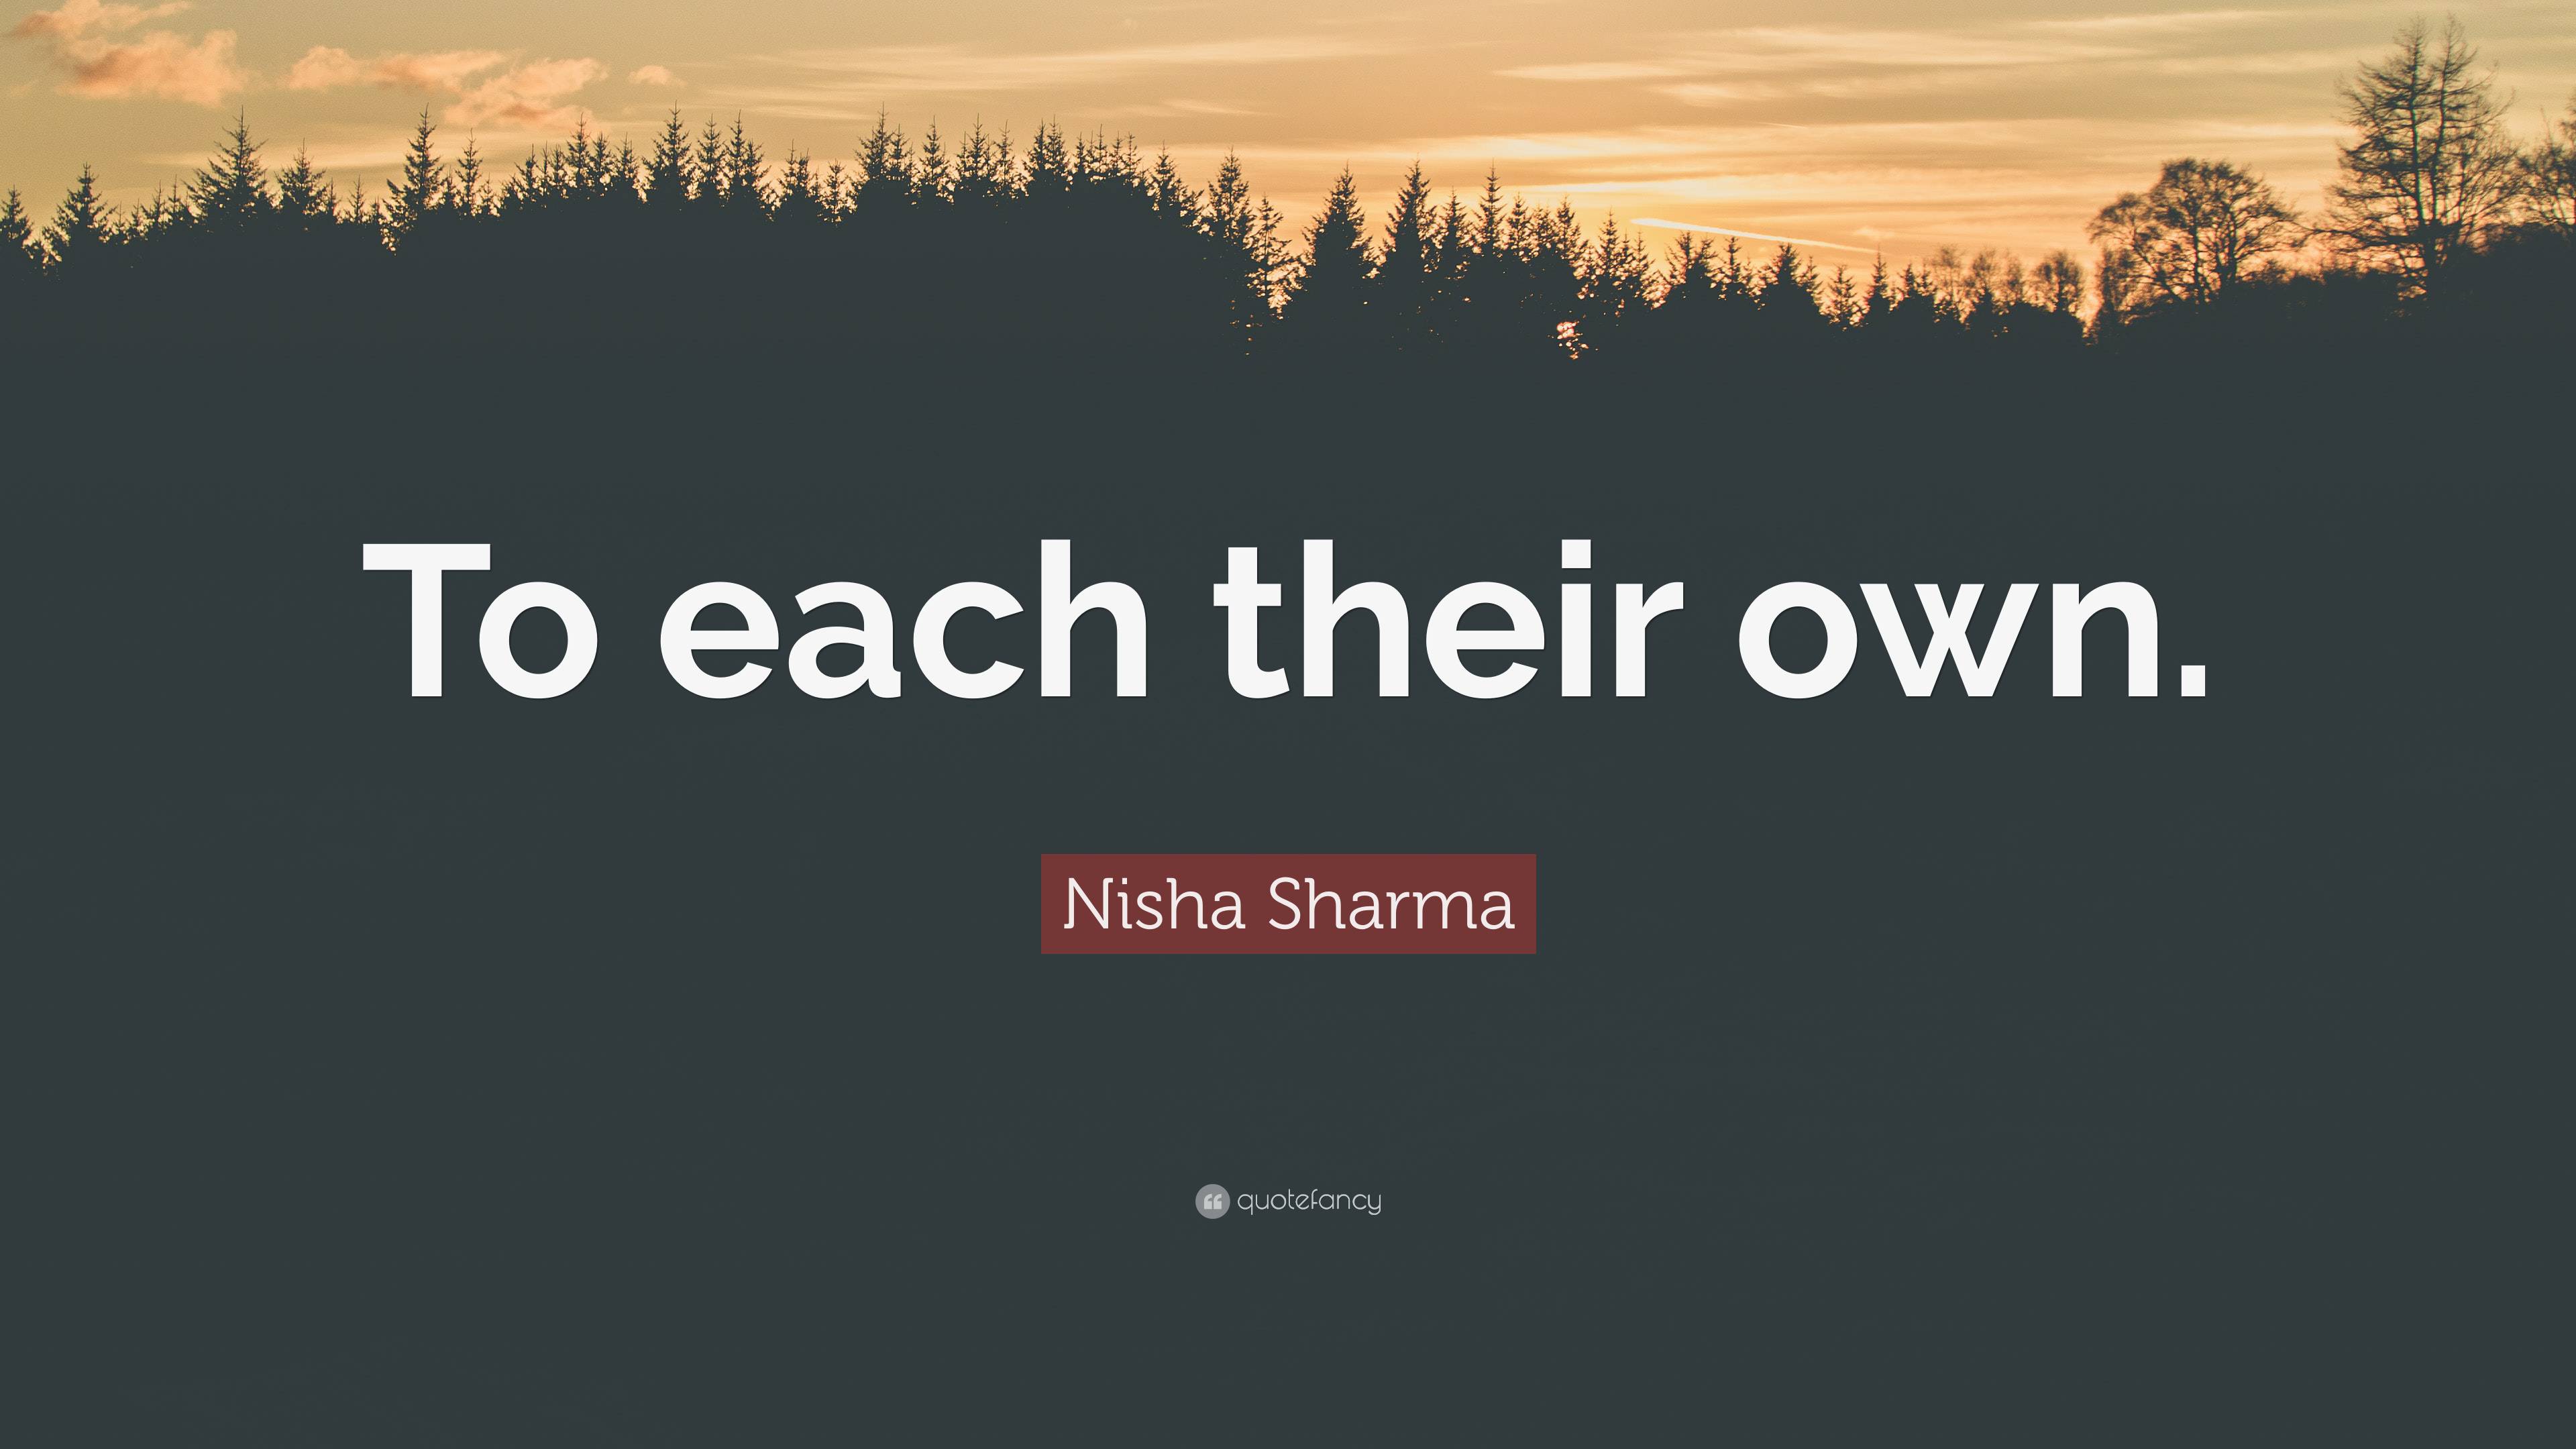 Nisha Sharma Quote: “To each their own.”